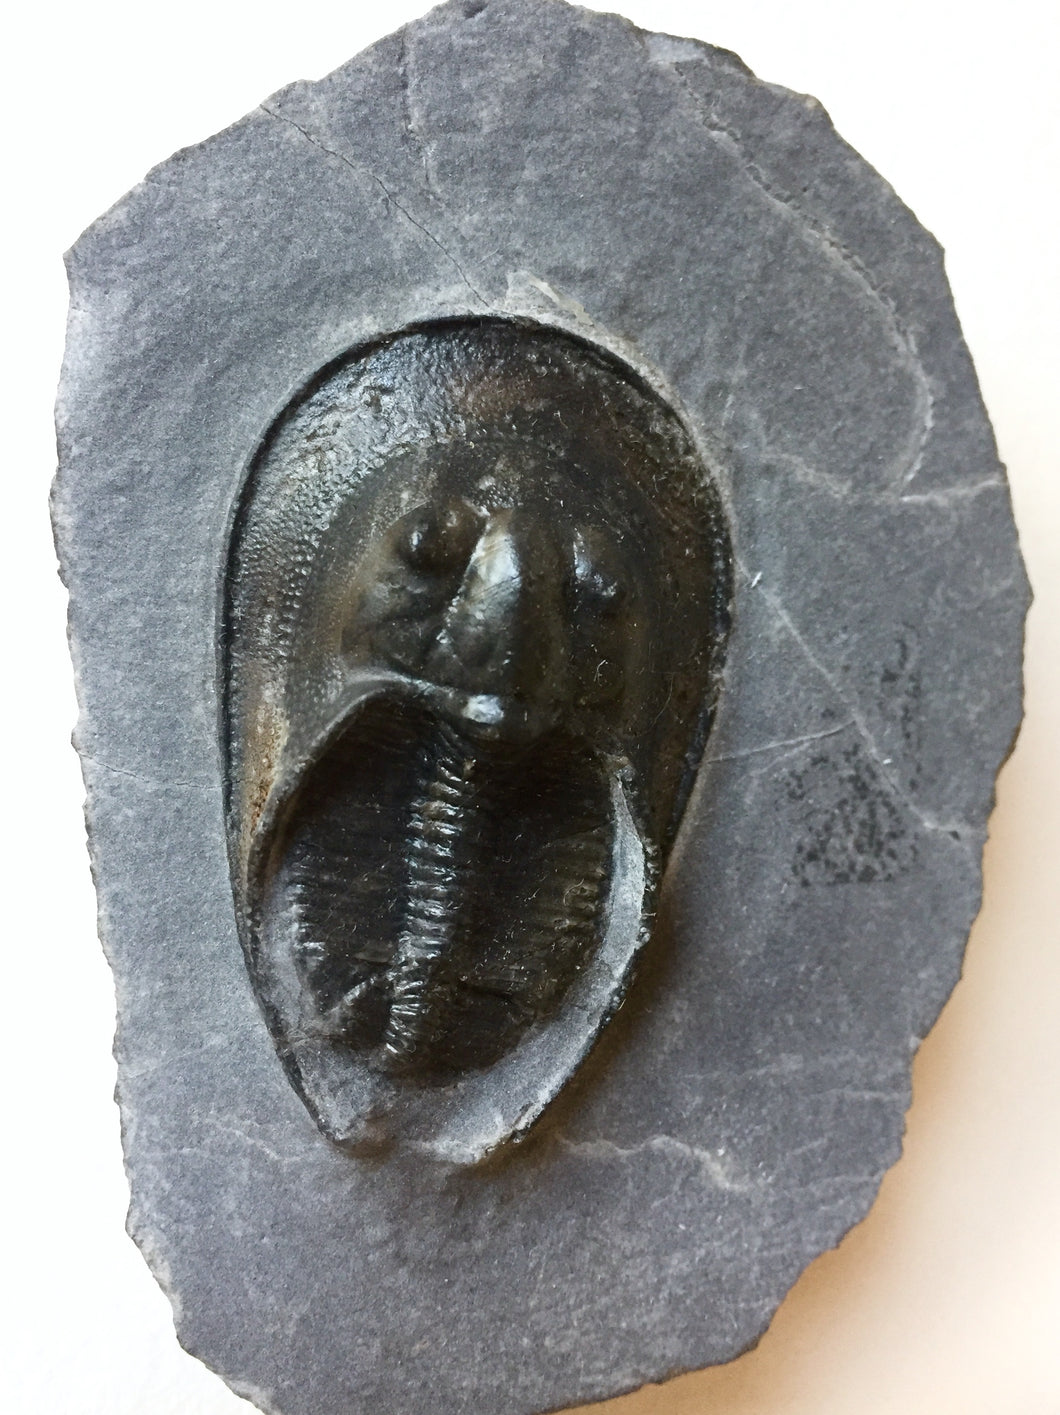 Trilobite fossil Harpes perriradiatus